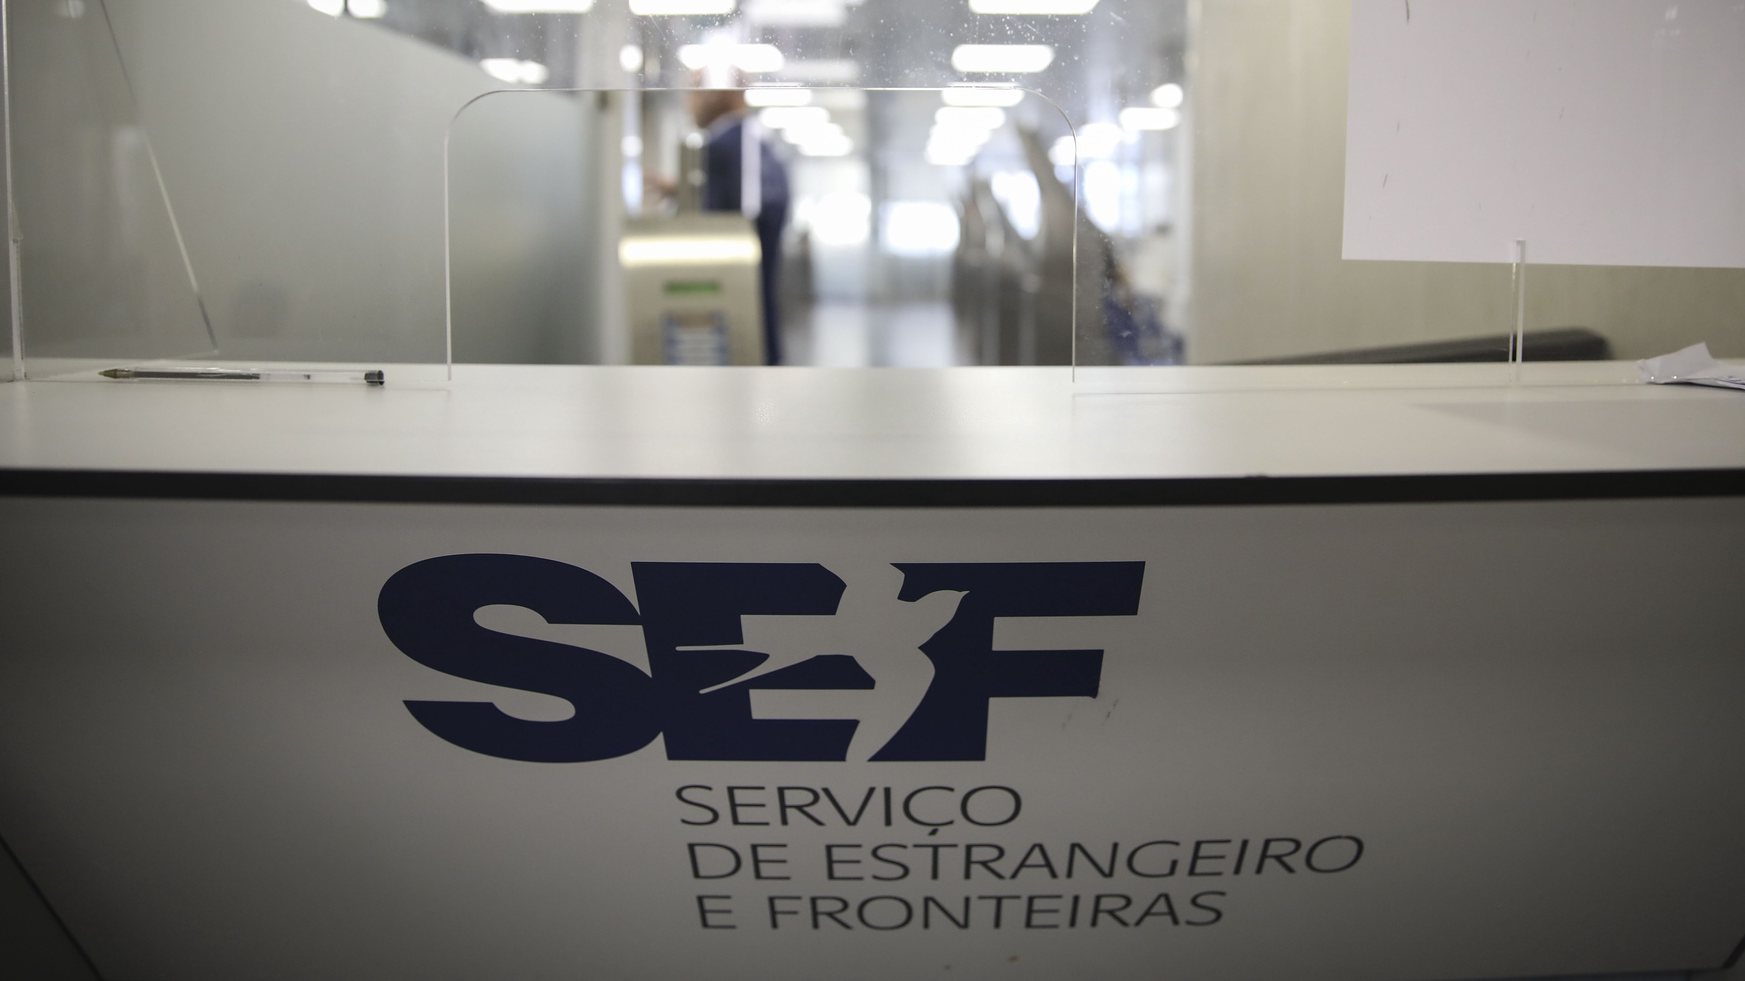 Instalações do Serviço de Estangeiros e Fronteiras (SEF) F, em Lisboa, 26 setembro 2022.  ANDRÉ KOSTERS / LUSA